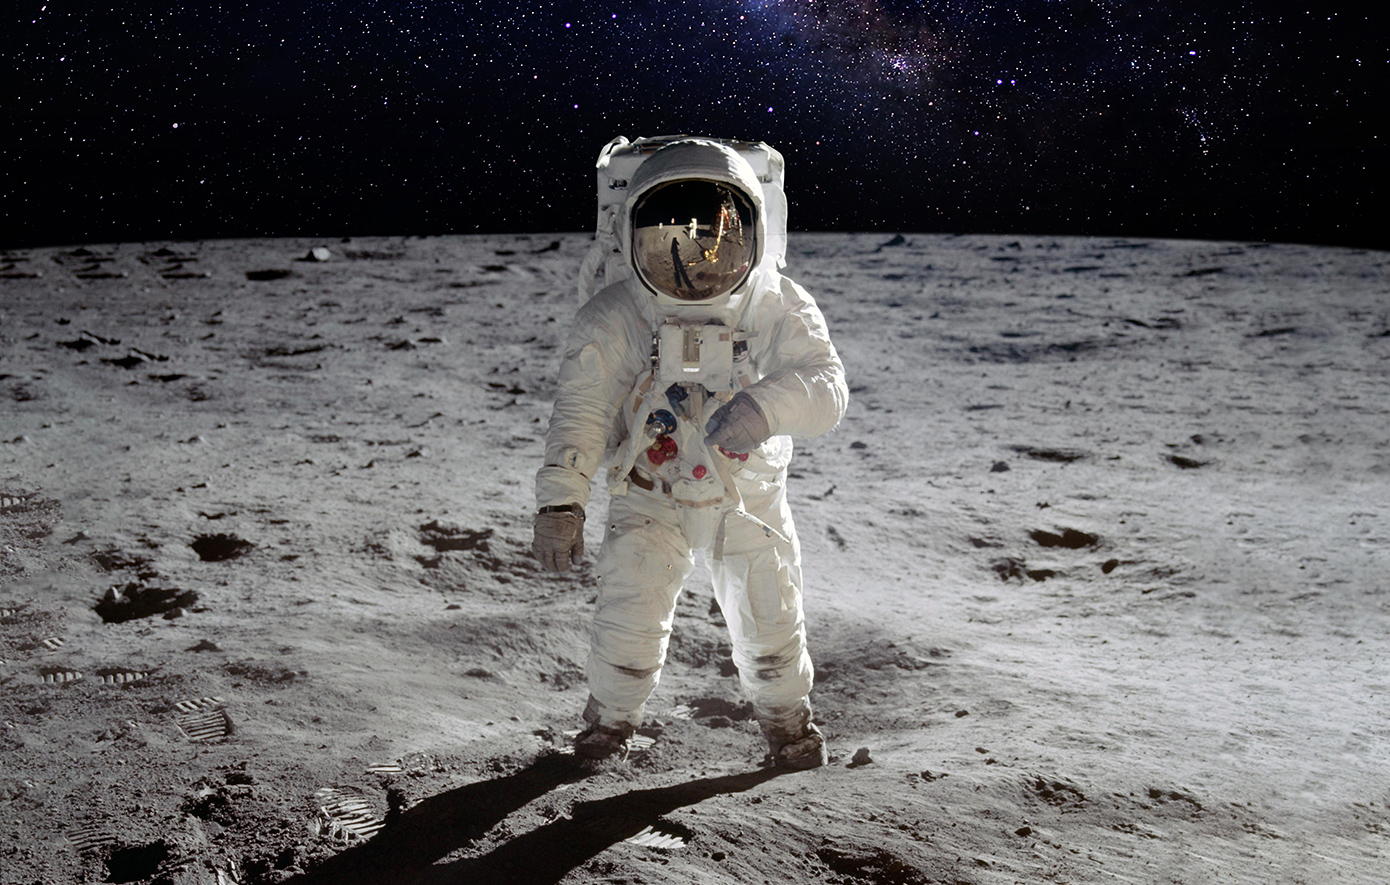 Τρία πράγματα που ίσως δεν γνωρίζετε για το Apollo 11 που σαν σήμερα προσεδαφίστηκε στη Σελήνη